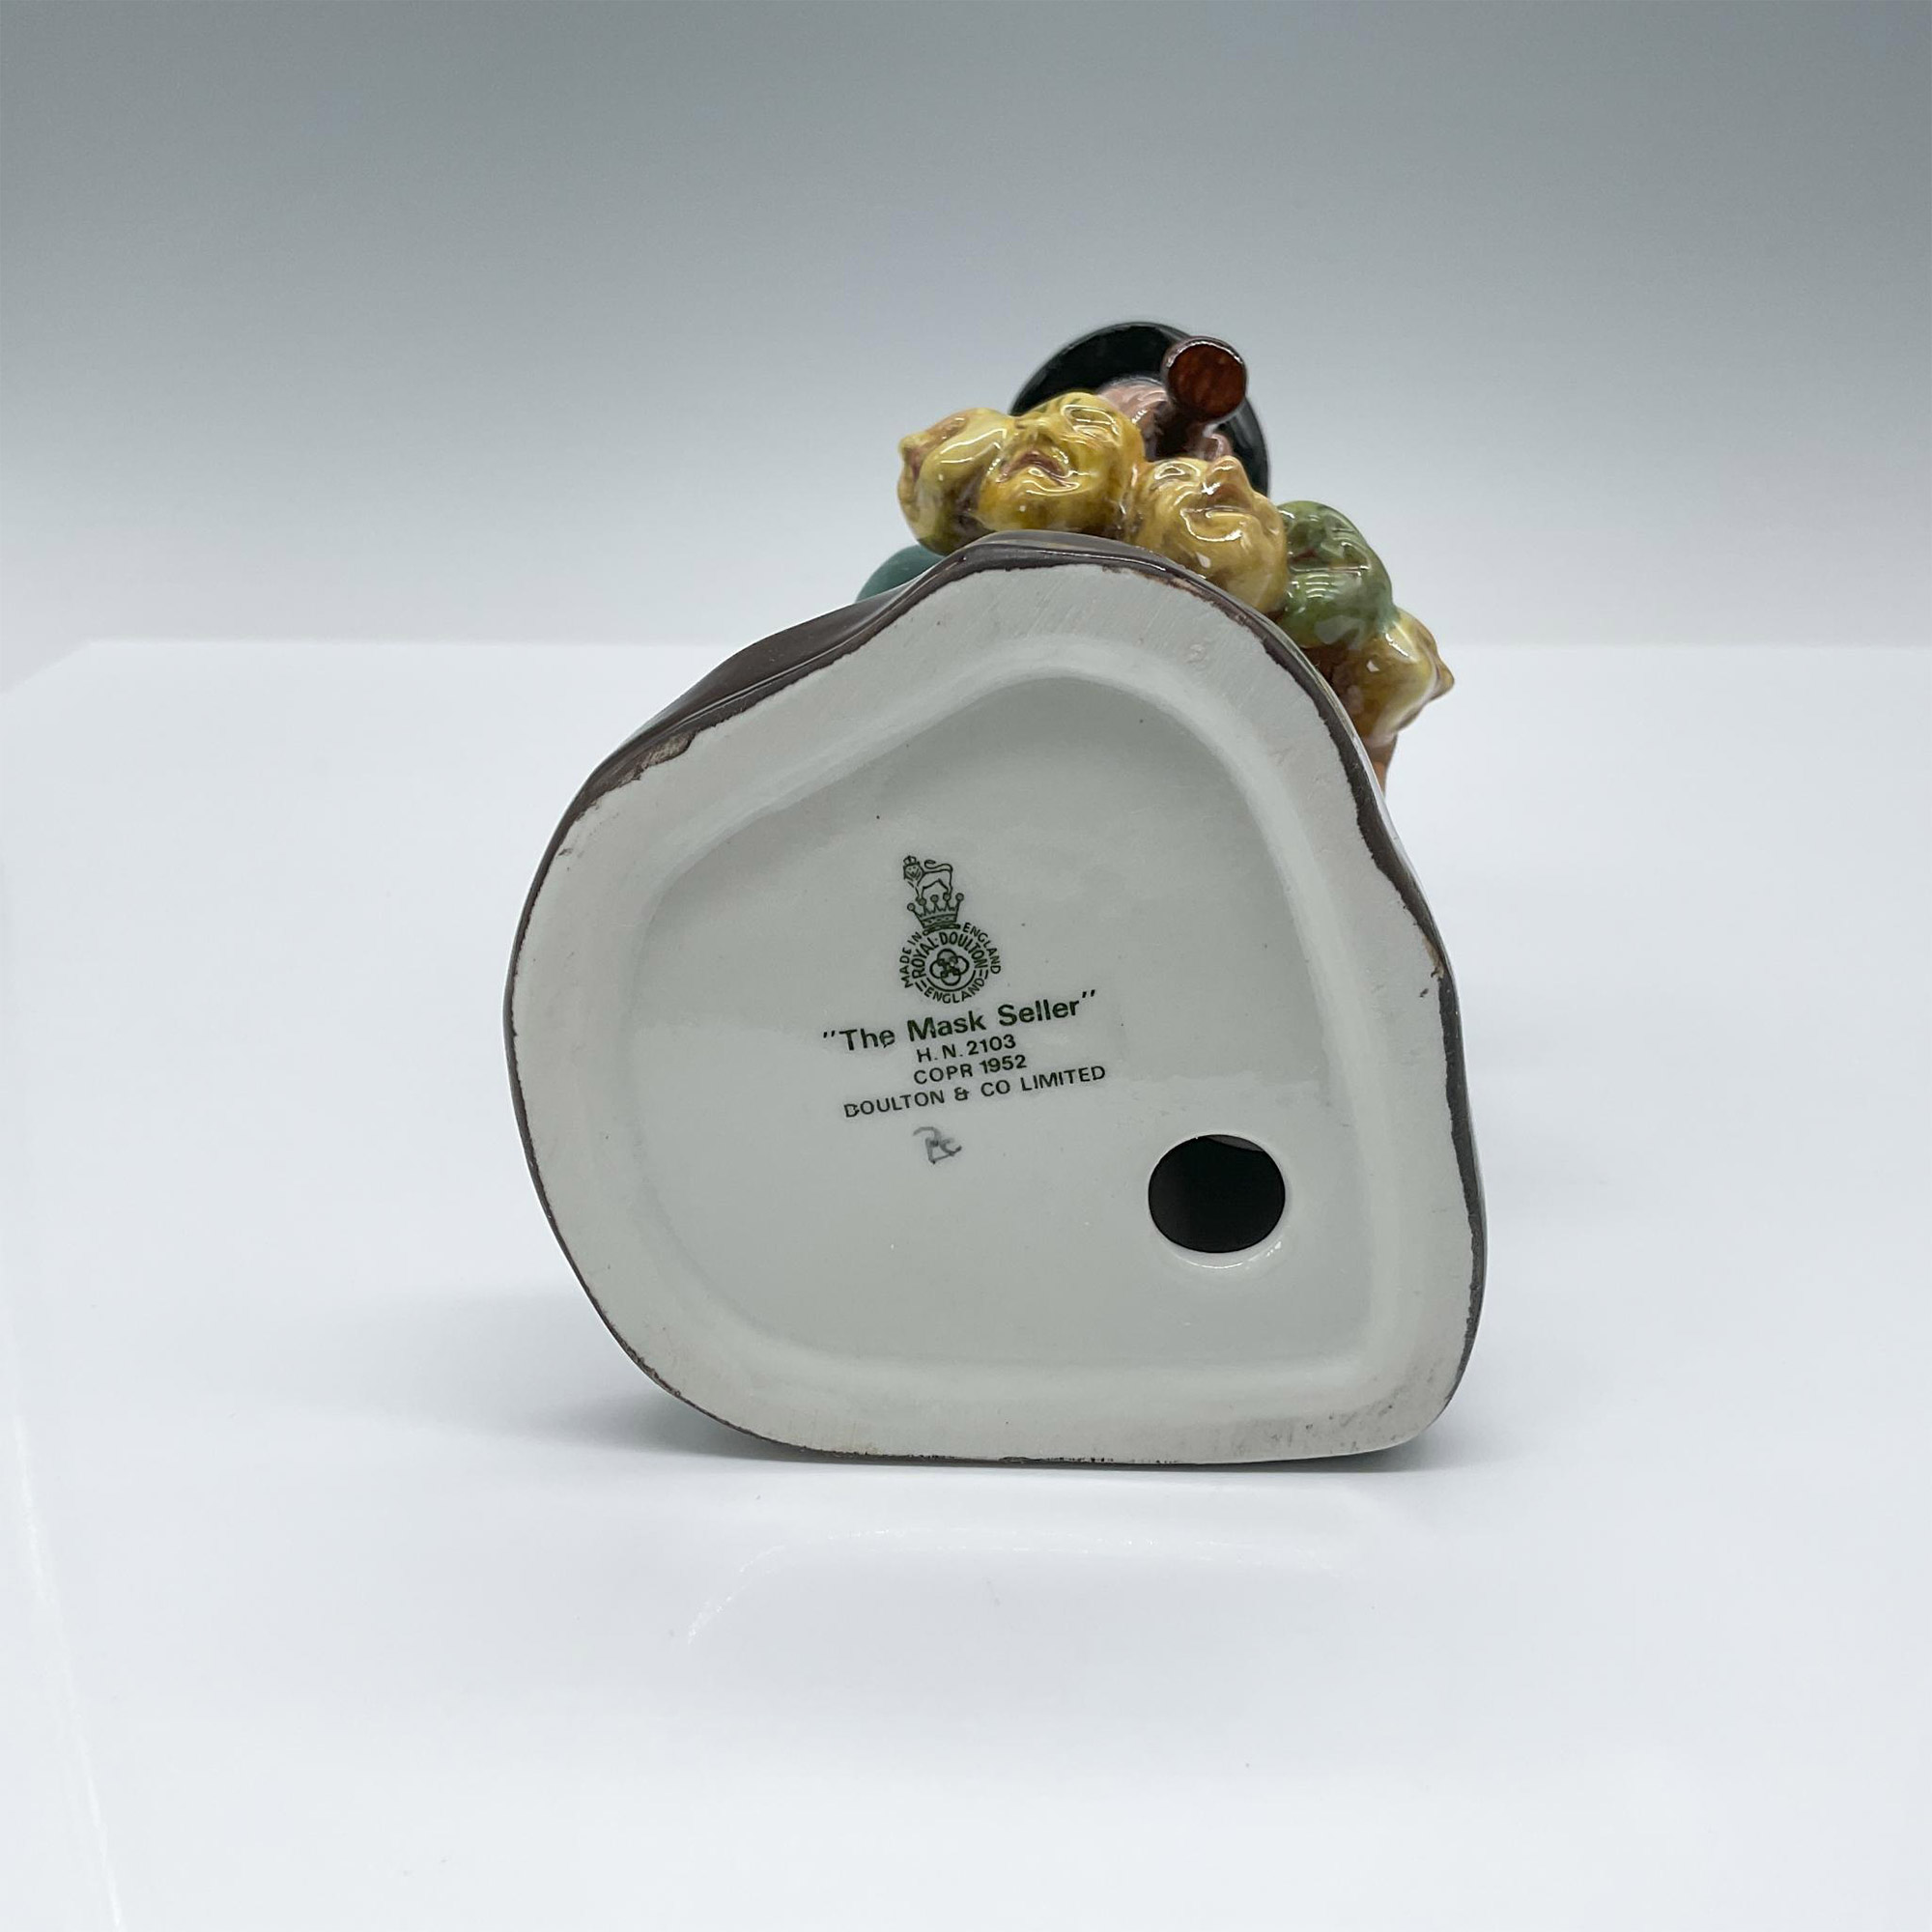 Mask Seller - HN2103 - Royal Doulton Figurine - Image 3 of 3